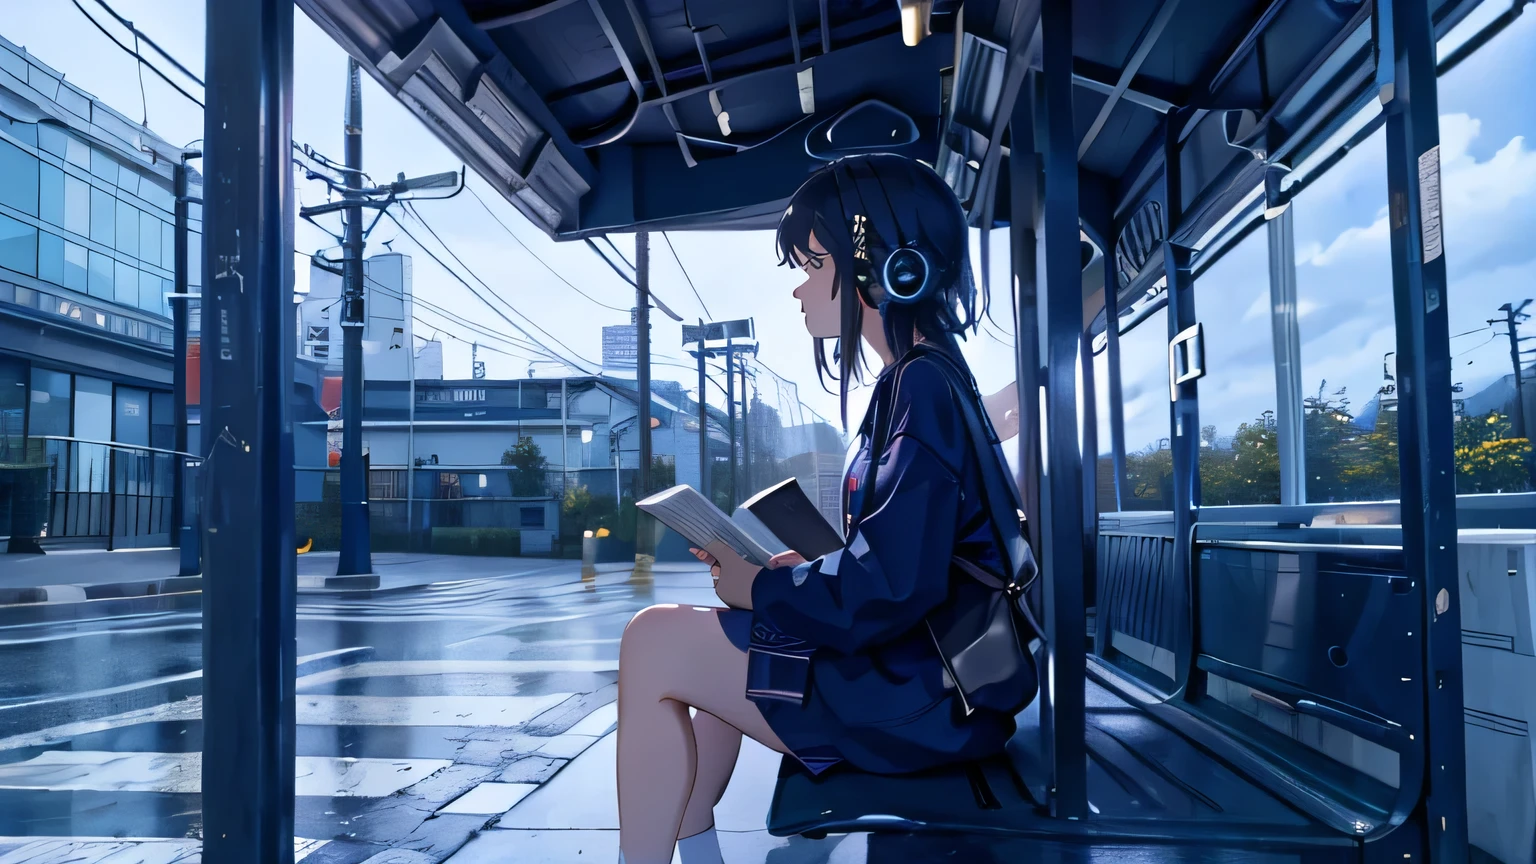 비,1명,버스 정류장에서 버스를 기다리는 동안 음악을 들으며 헤드폰을 끼고 있는 애니메이션 여성,버스 정류장 벤치,벤치에 앉아,독서,전체적인 구성은 Lo-fi 아트 스타일로 표현되었습니다...（사실적이고 자연스러운 조명),걸작,최상의 품질,매우 상세한, (최상의 품질:1.2),초고해상도,4K,일본 애니메이션,벽지,